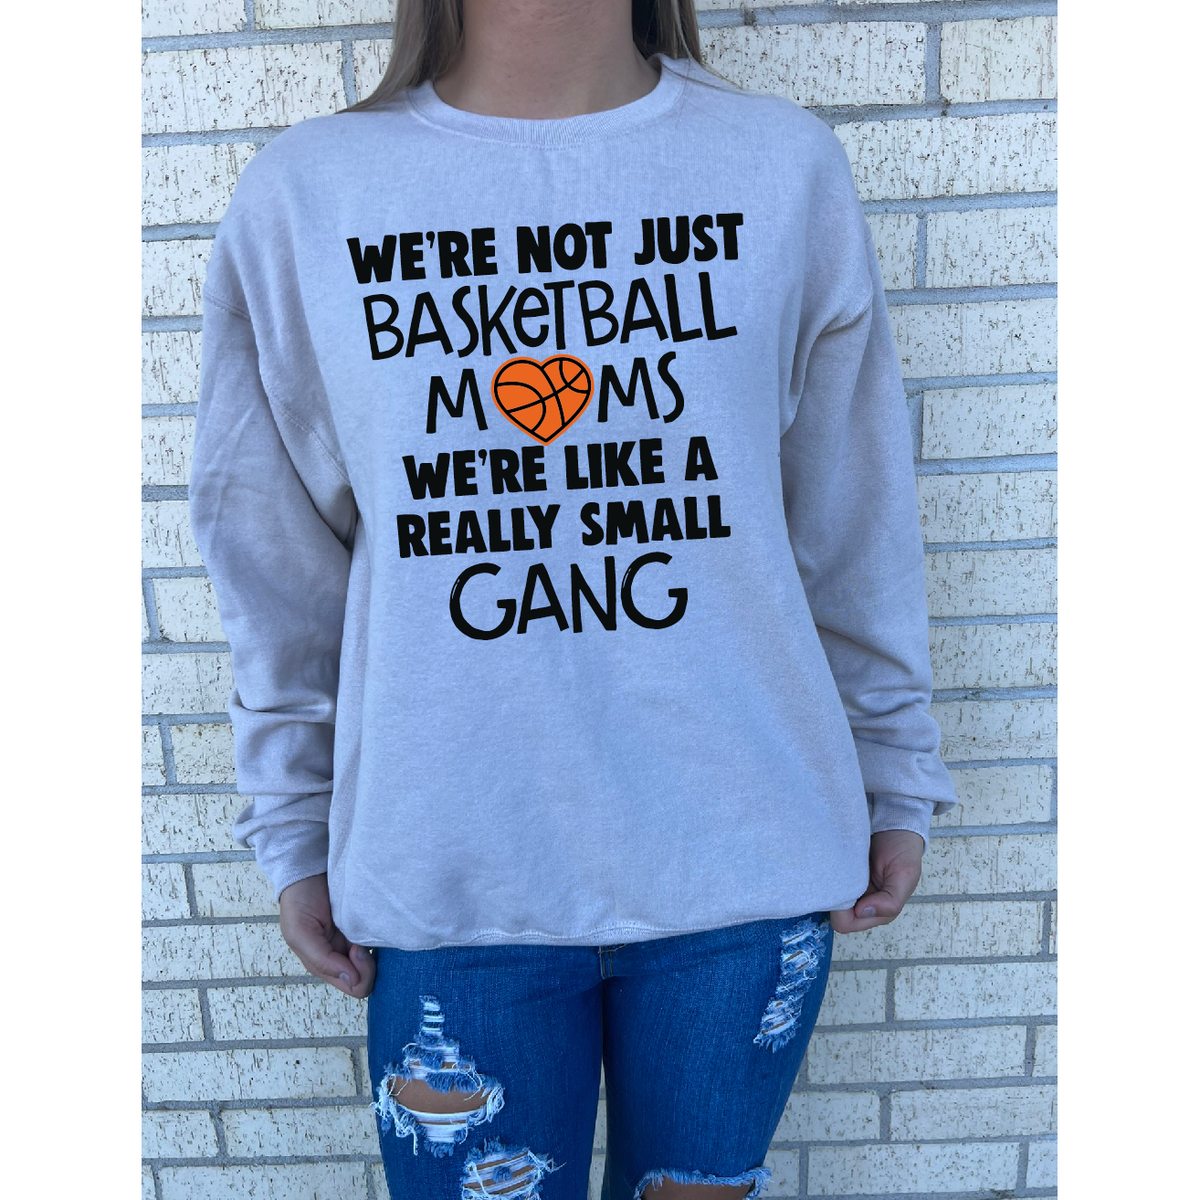 Basketball Moms Small gang Tee or Sweatshirt